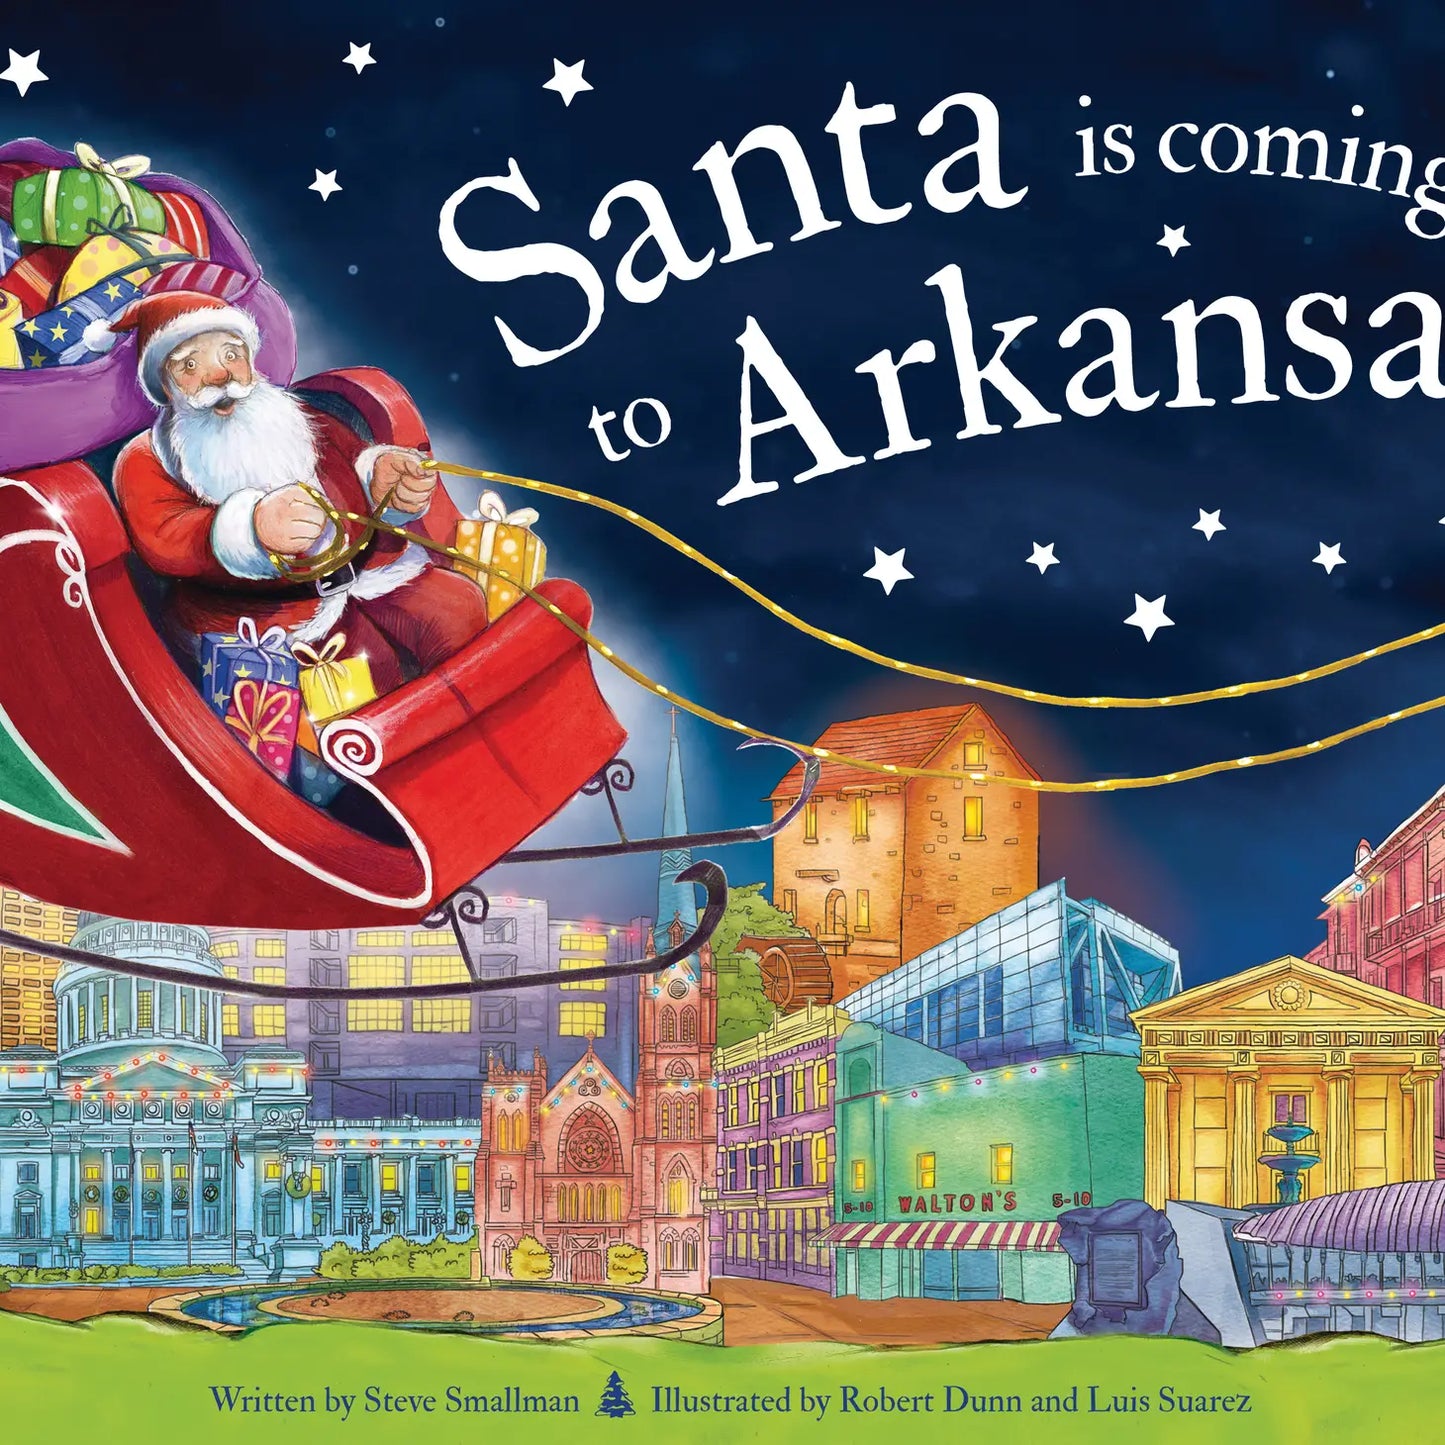 Santa is Coming to Arkansas